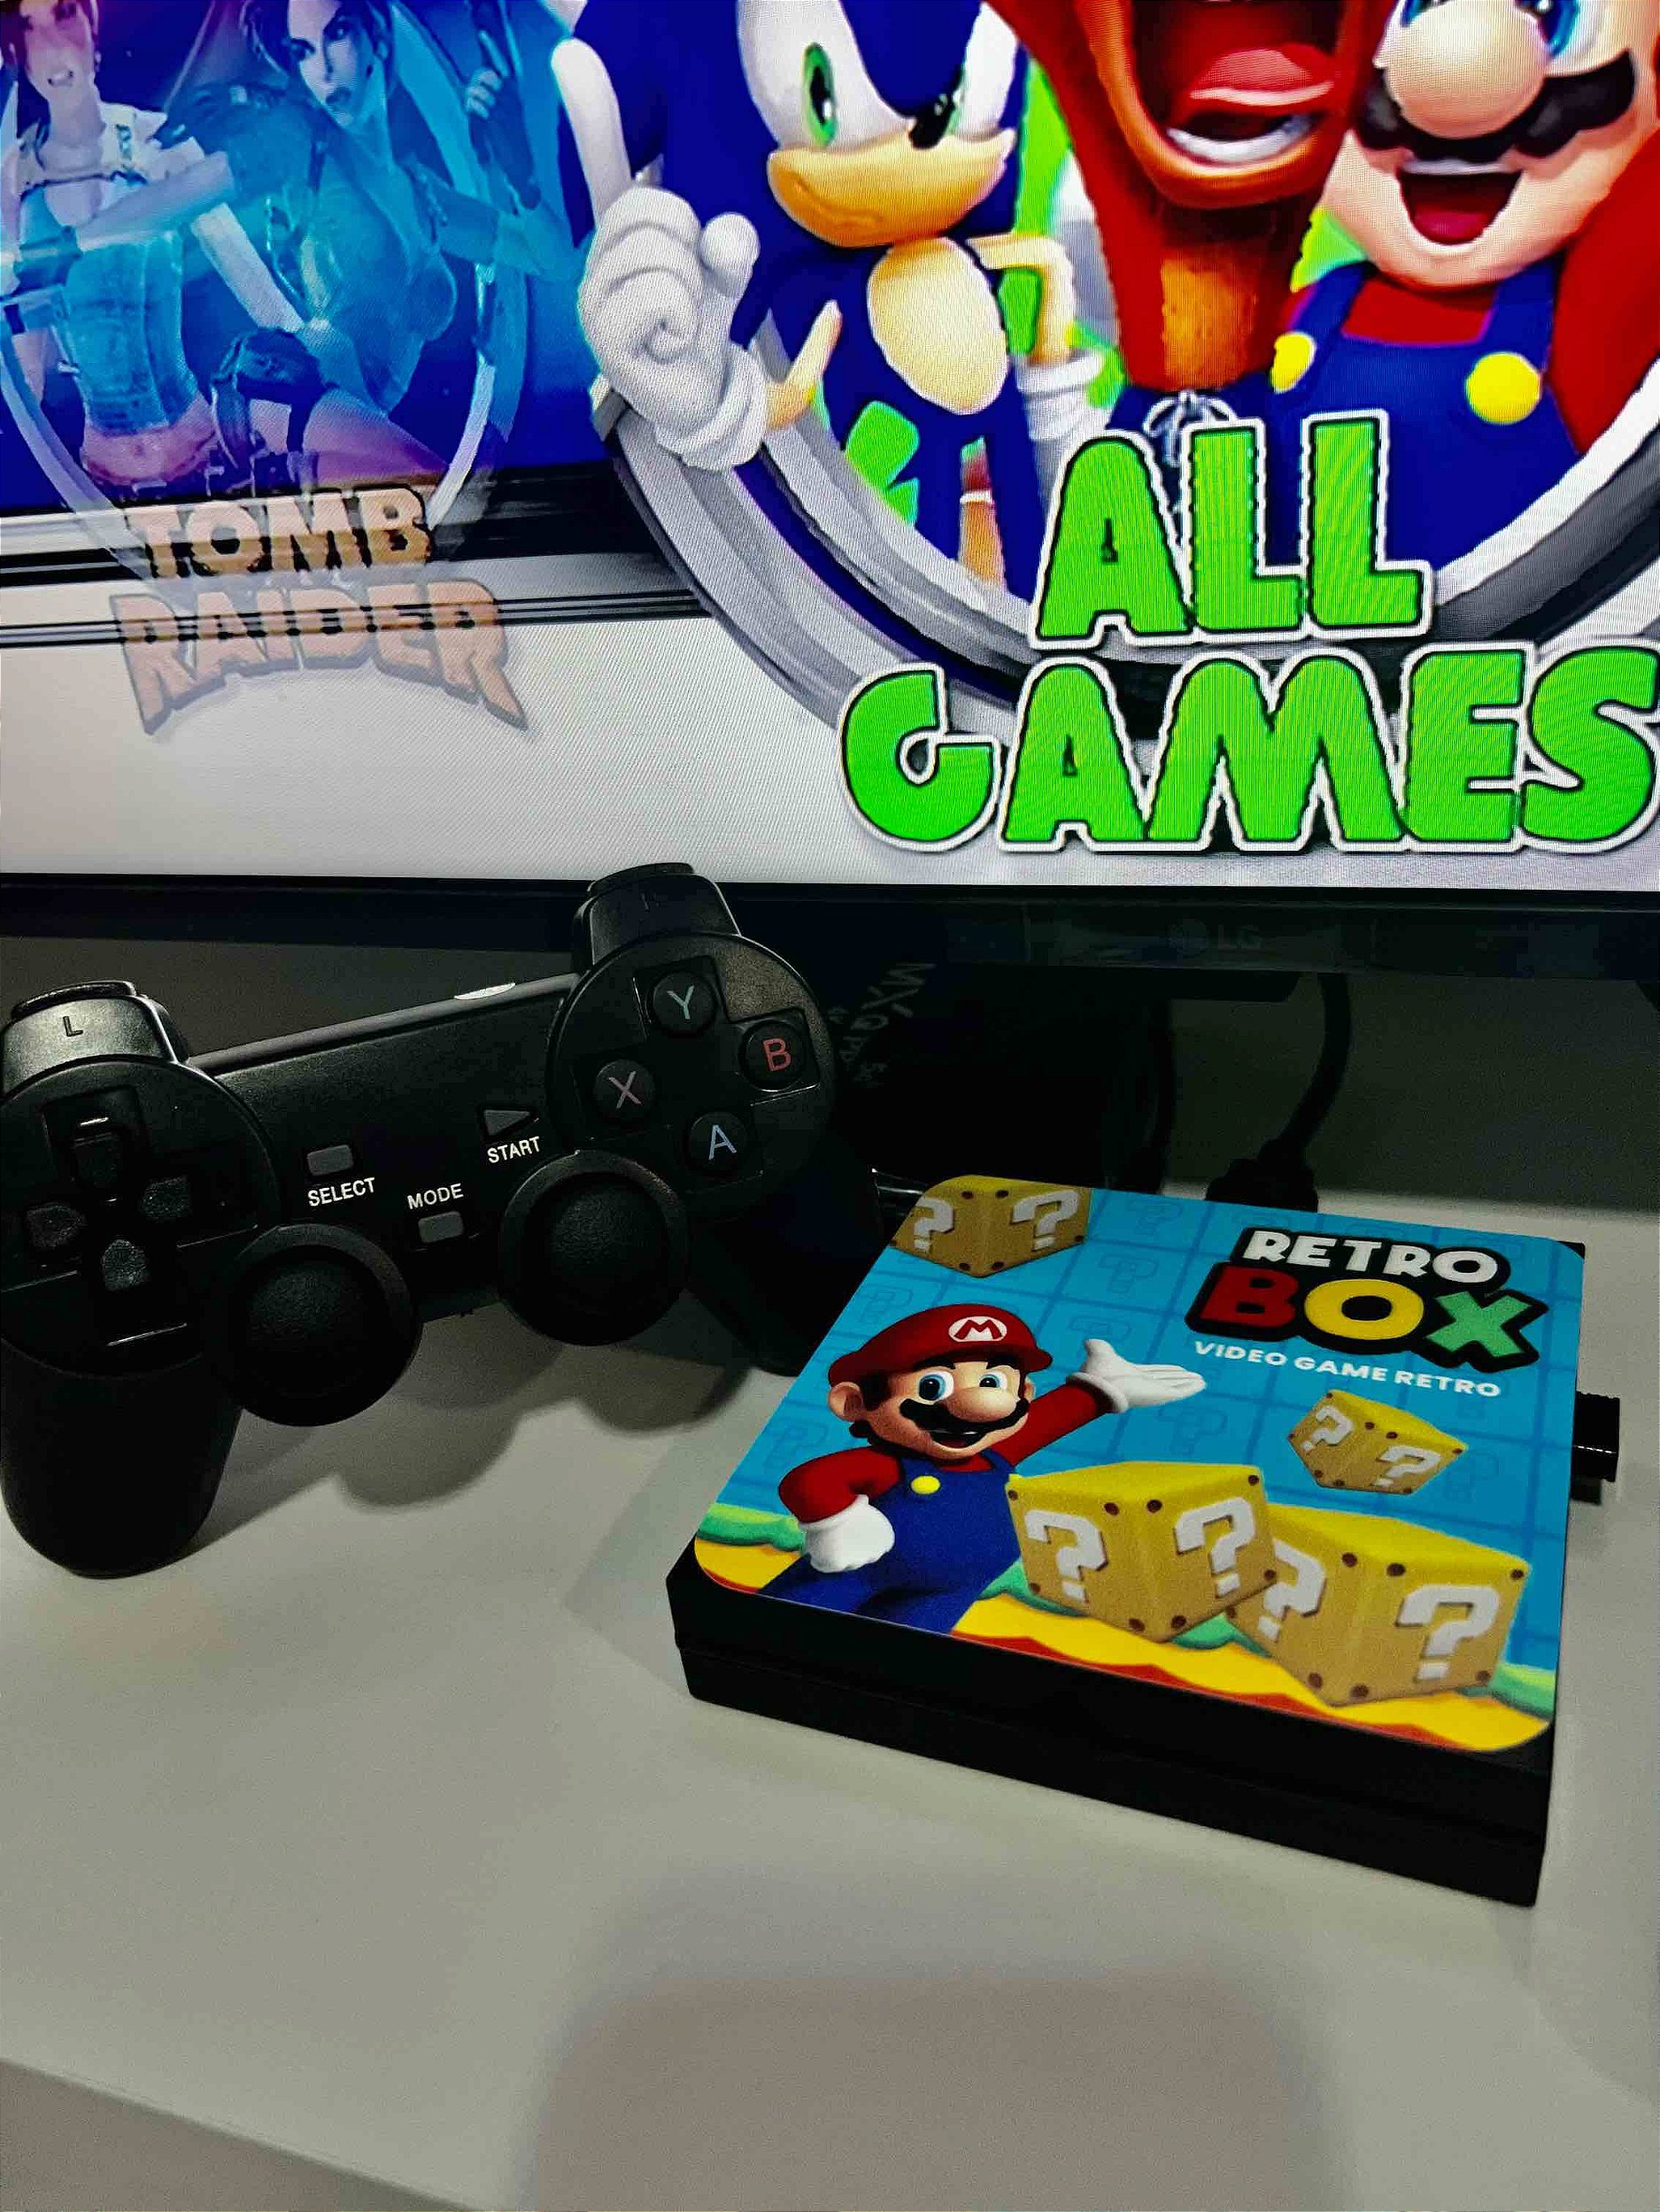 Video Game Box 90000 Jogos Clássicos Retro 2 Controles com Fio - GAME LIFE  BRASIL